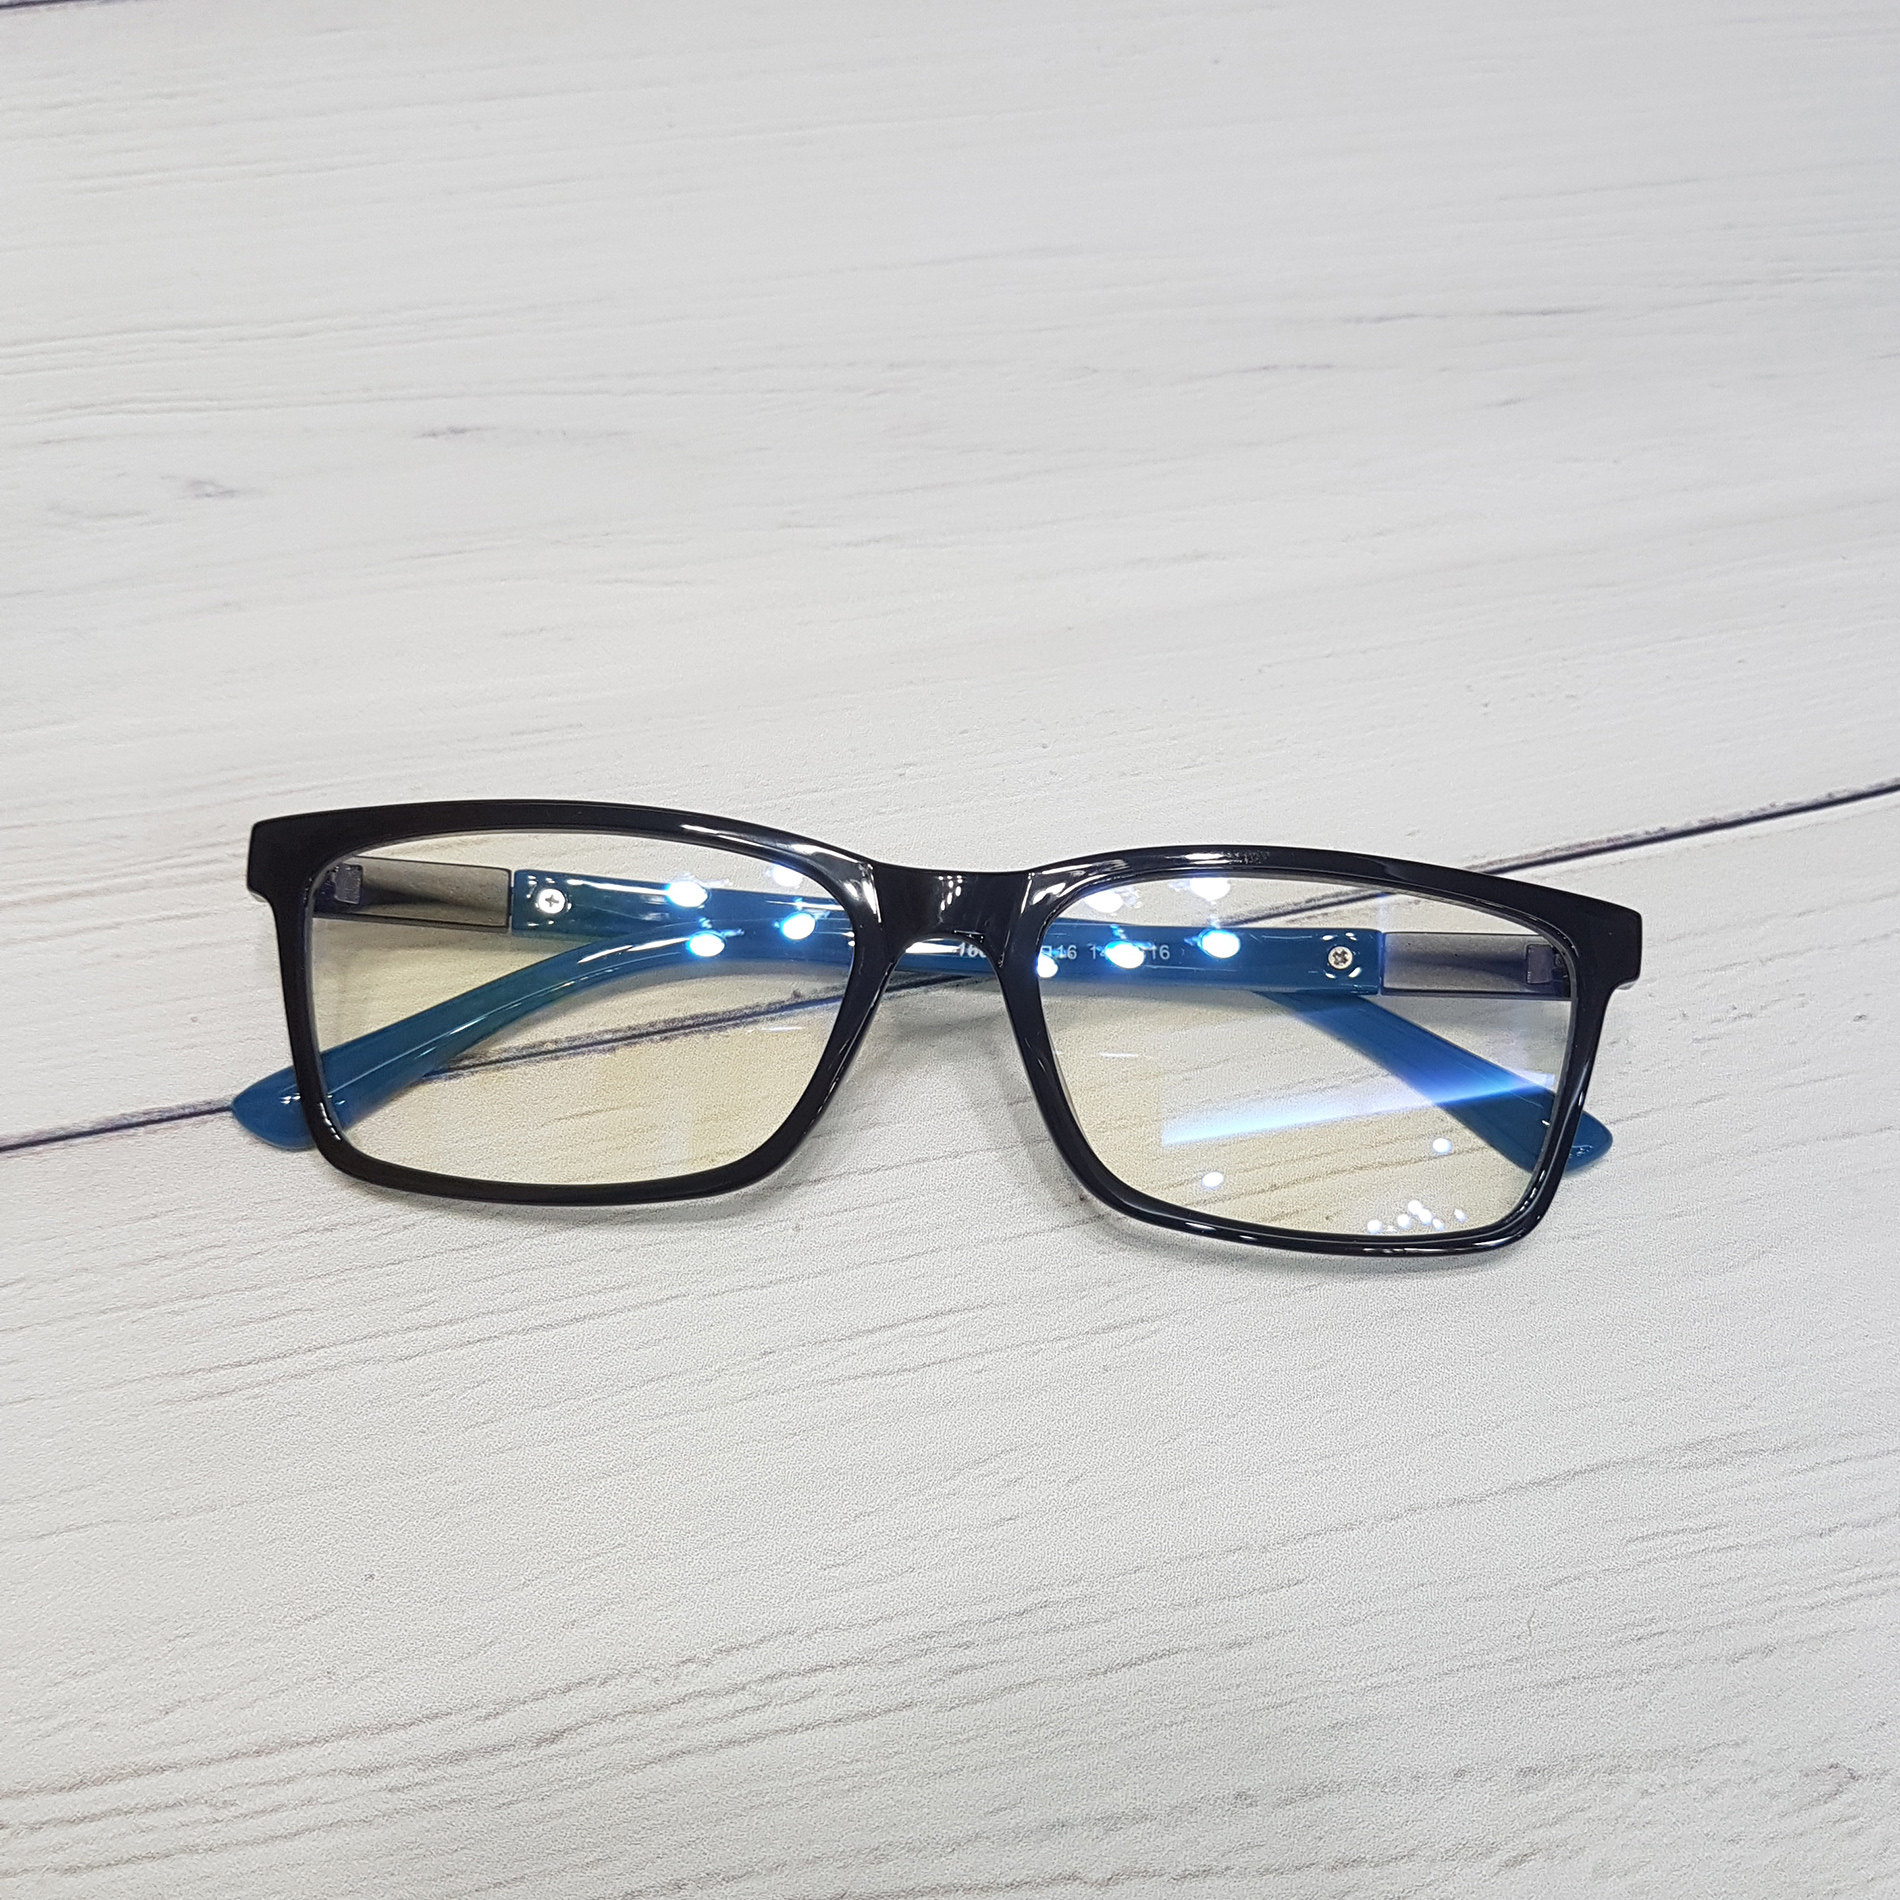 25.Mua kính bảo vệ mắt chống ánh sáng xanh ở đâu tốt, giá rẻ.1